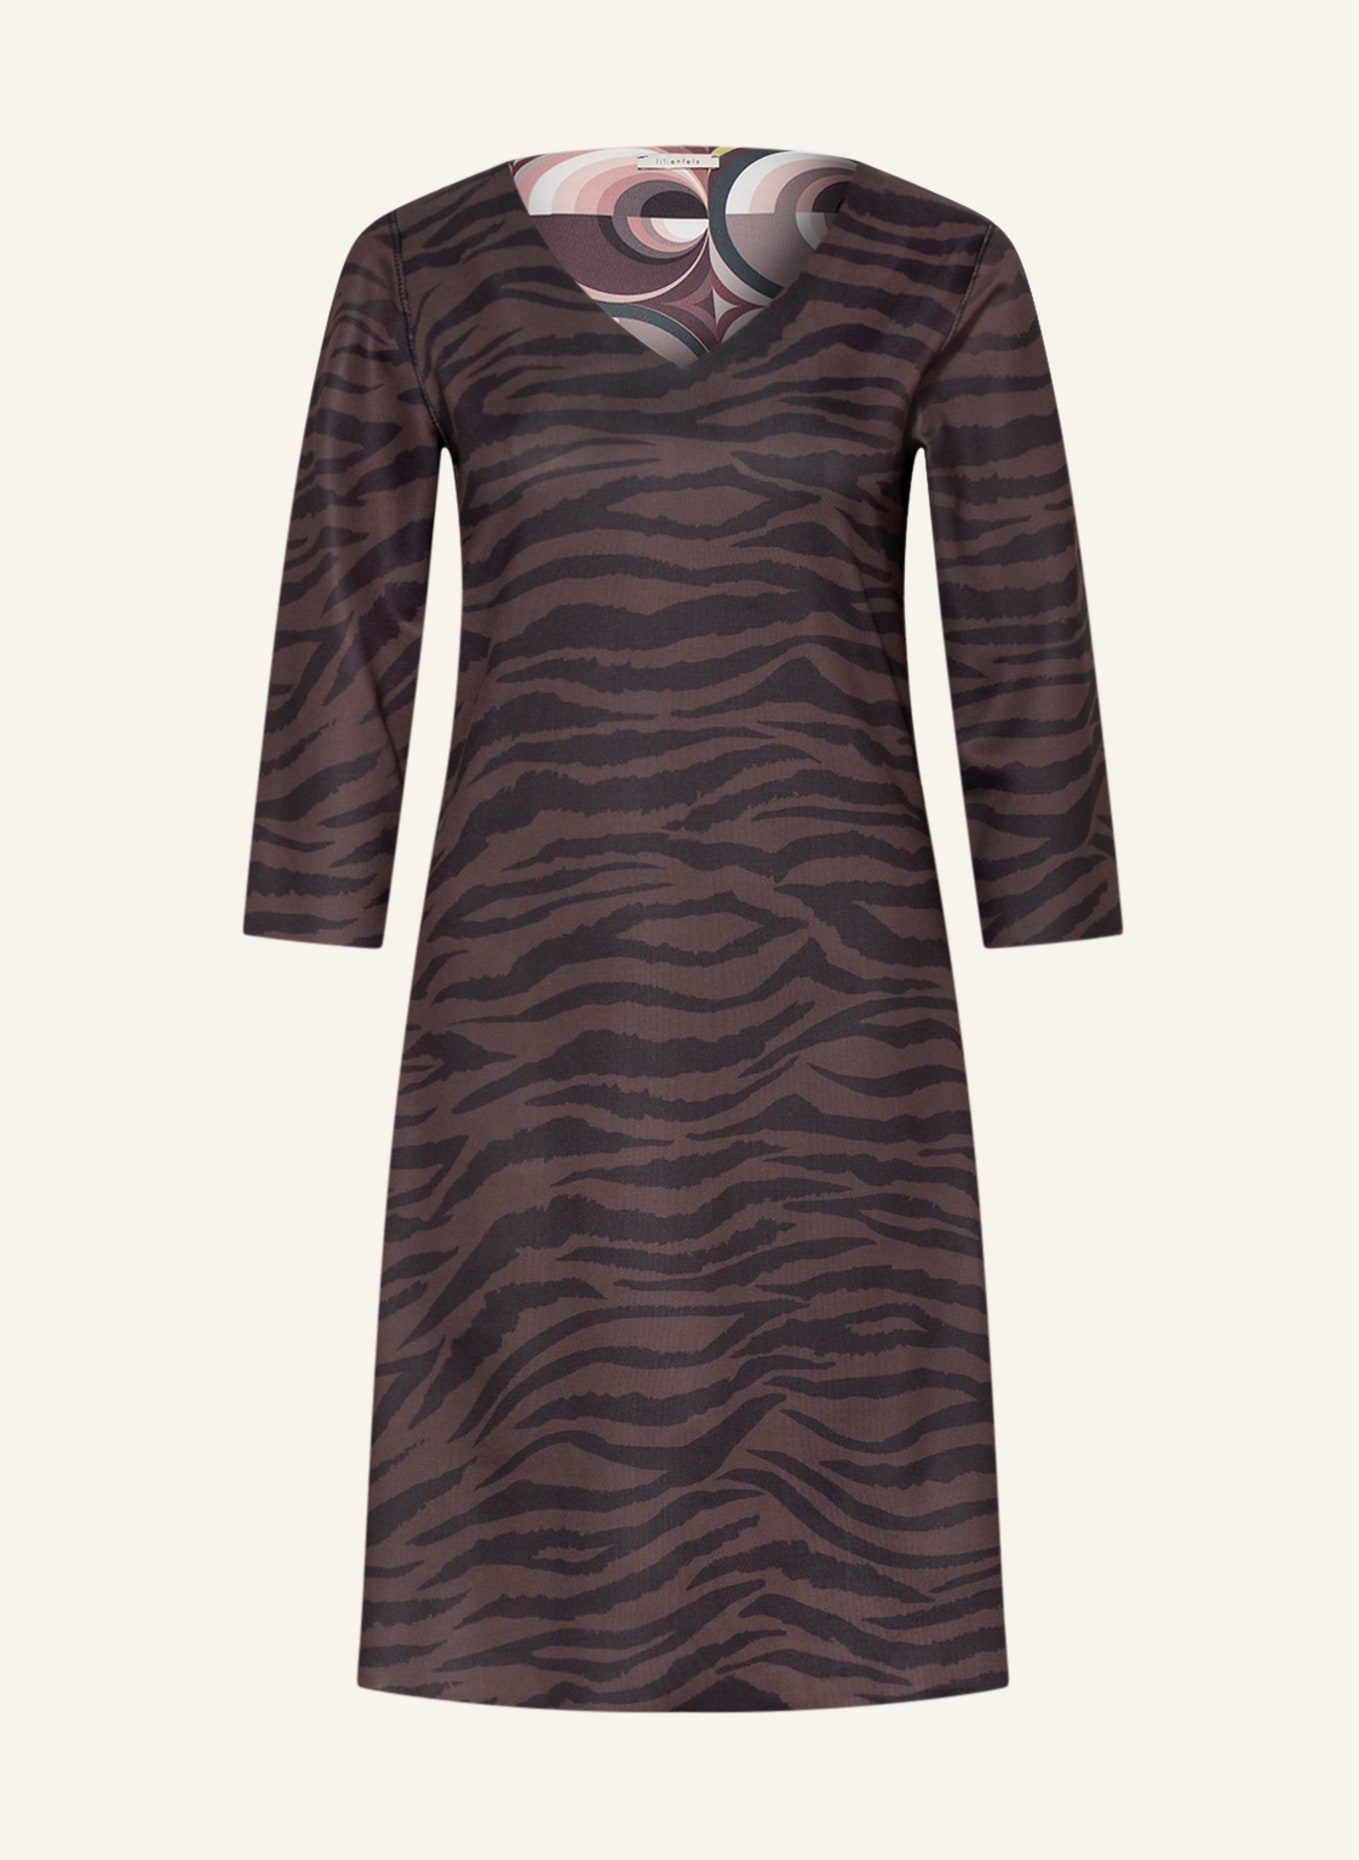 lilienfels Kleid mit 3/4-Arm , Farbe: BRAUN/ SCHWARZ/ CAMEL (Bild 1)